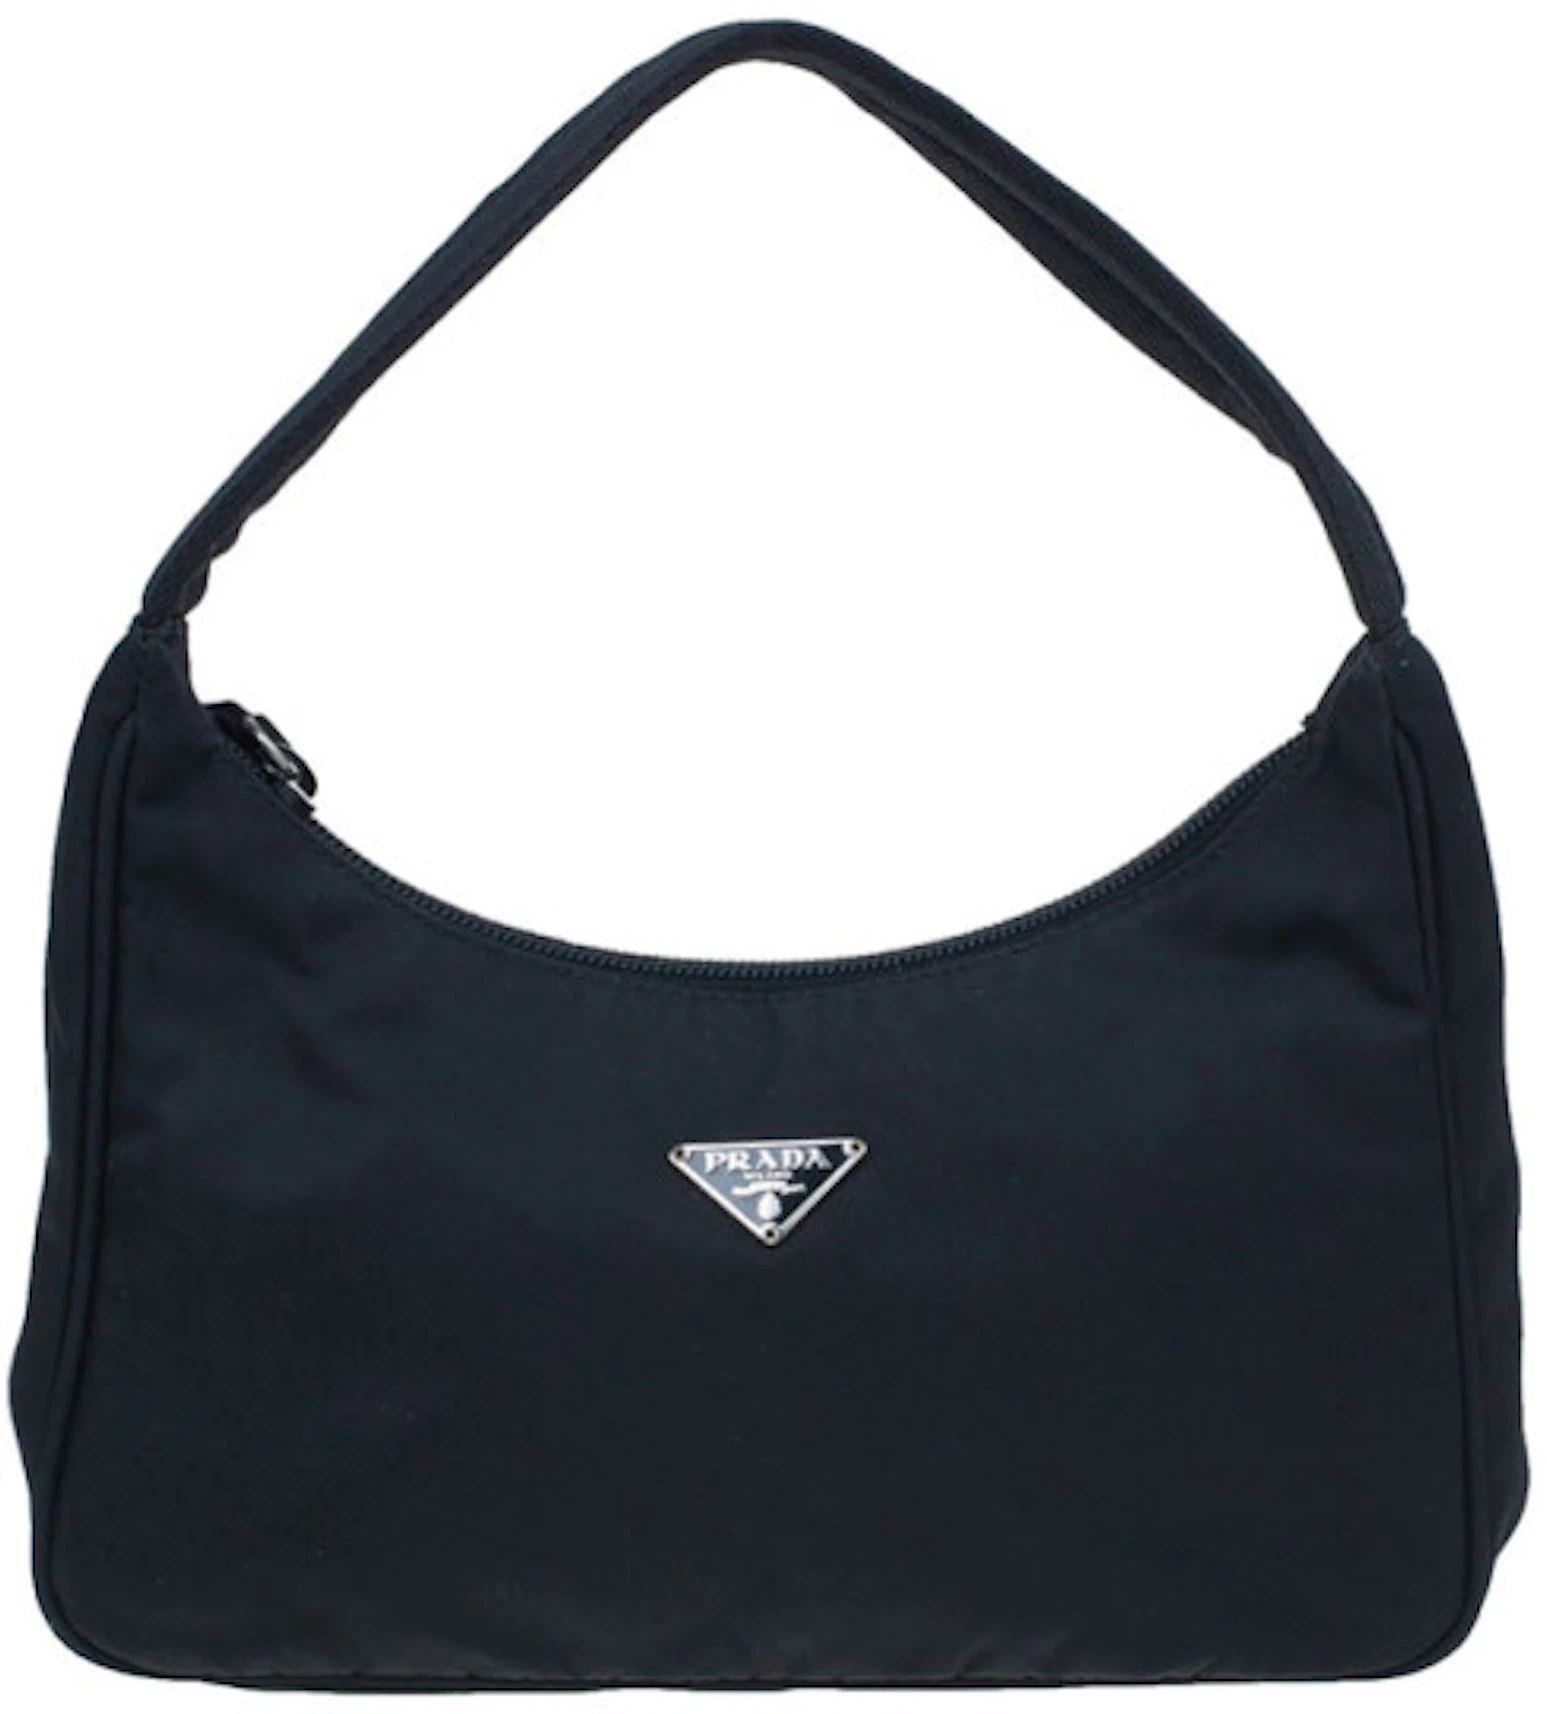 Prada Shoulder Bag Nylon Tessuto Mini Black in Nylon/Leather with  Silver-tone - US